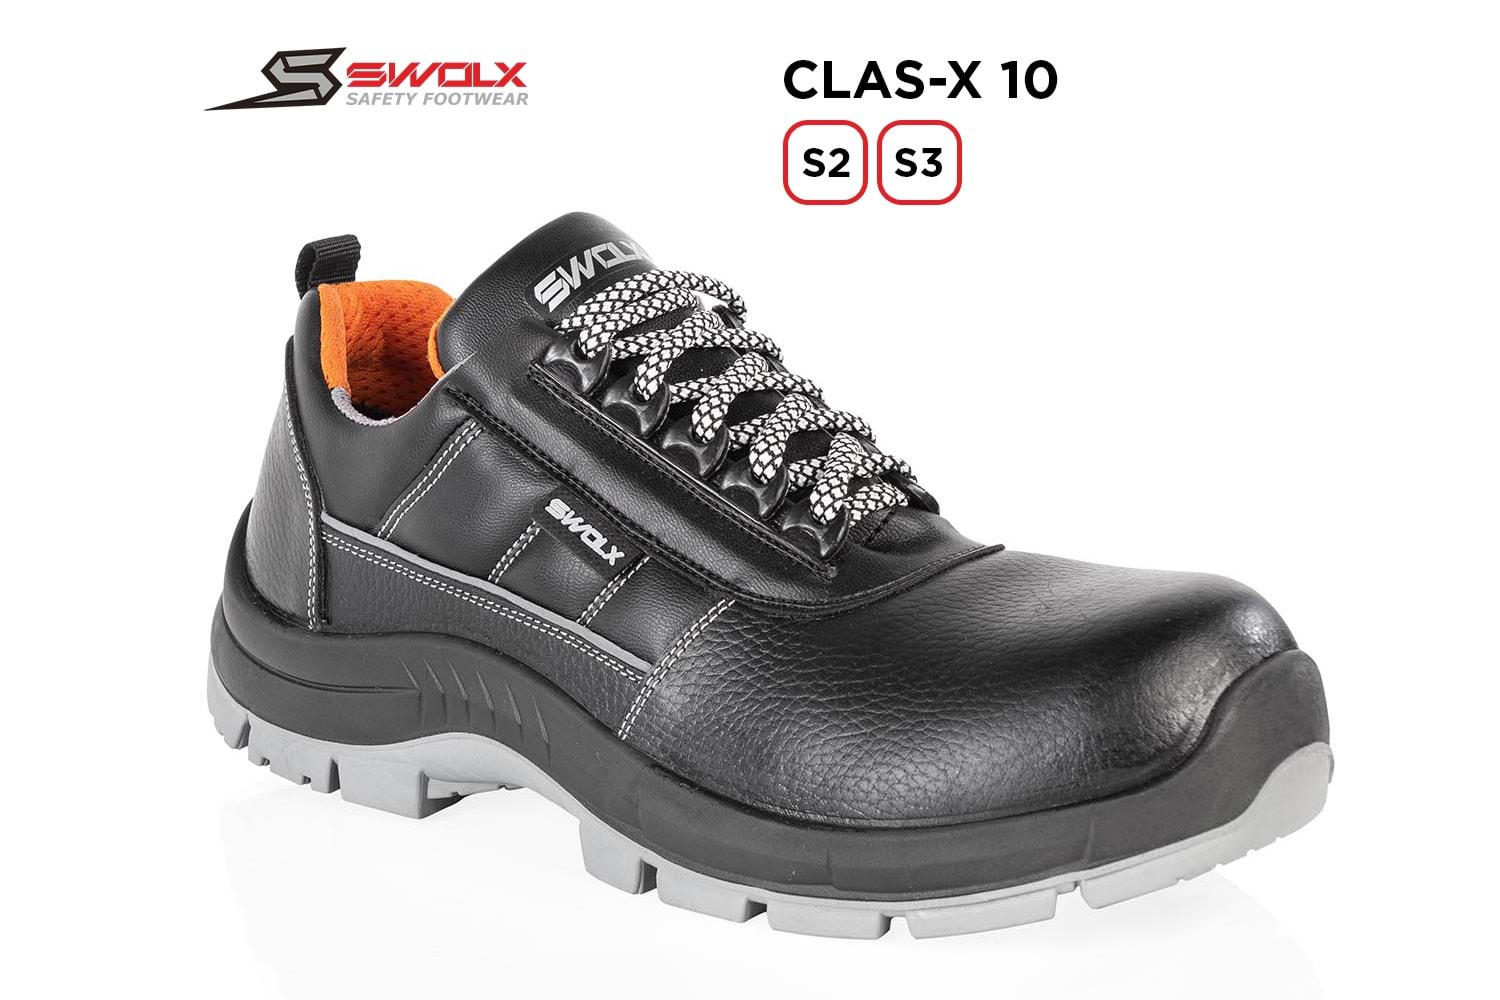 Swolx İş Ayakkabısı - Clas-X 10 S2 - 43